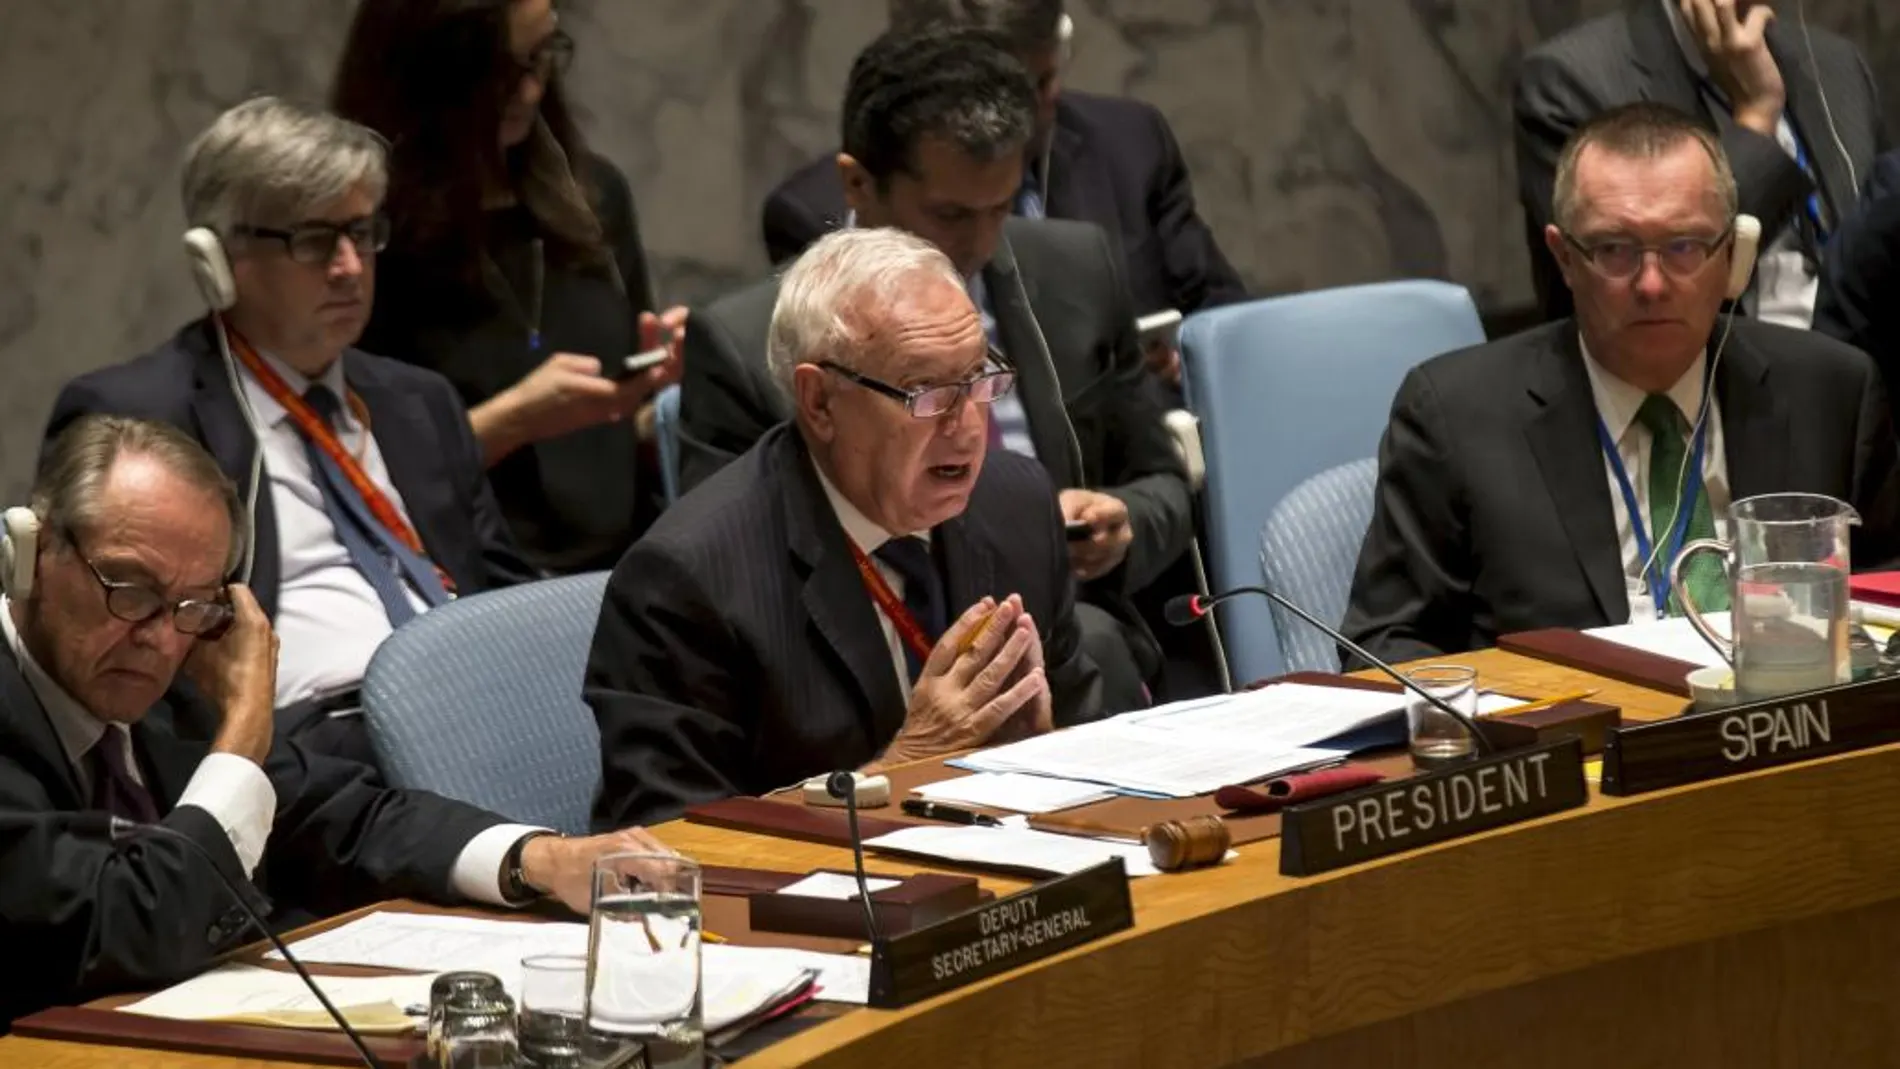 El ministro de Asuntos Exteriores de España, José Manuel García-Margallo, preside la sesión del Consejo de Seguridad de Naciones Unidas dedicada a la situación de Oriente Medio y el conflicto árabe-israelí